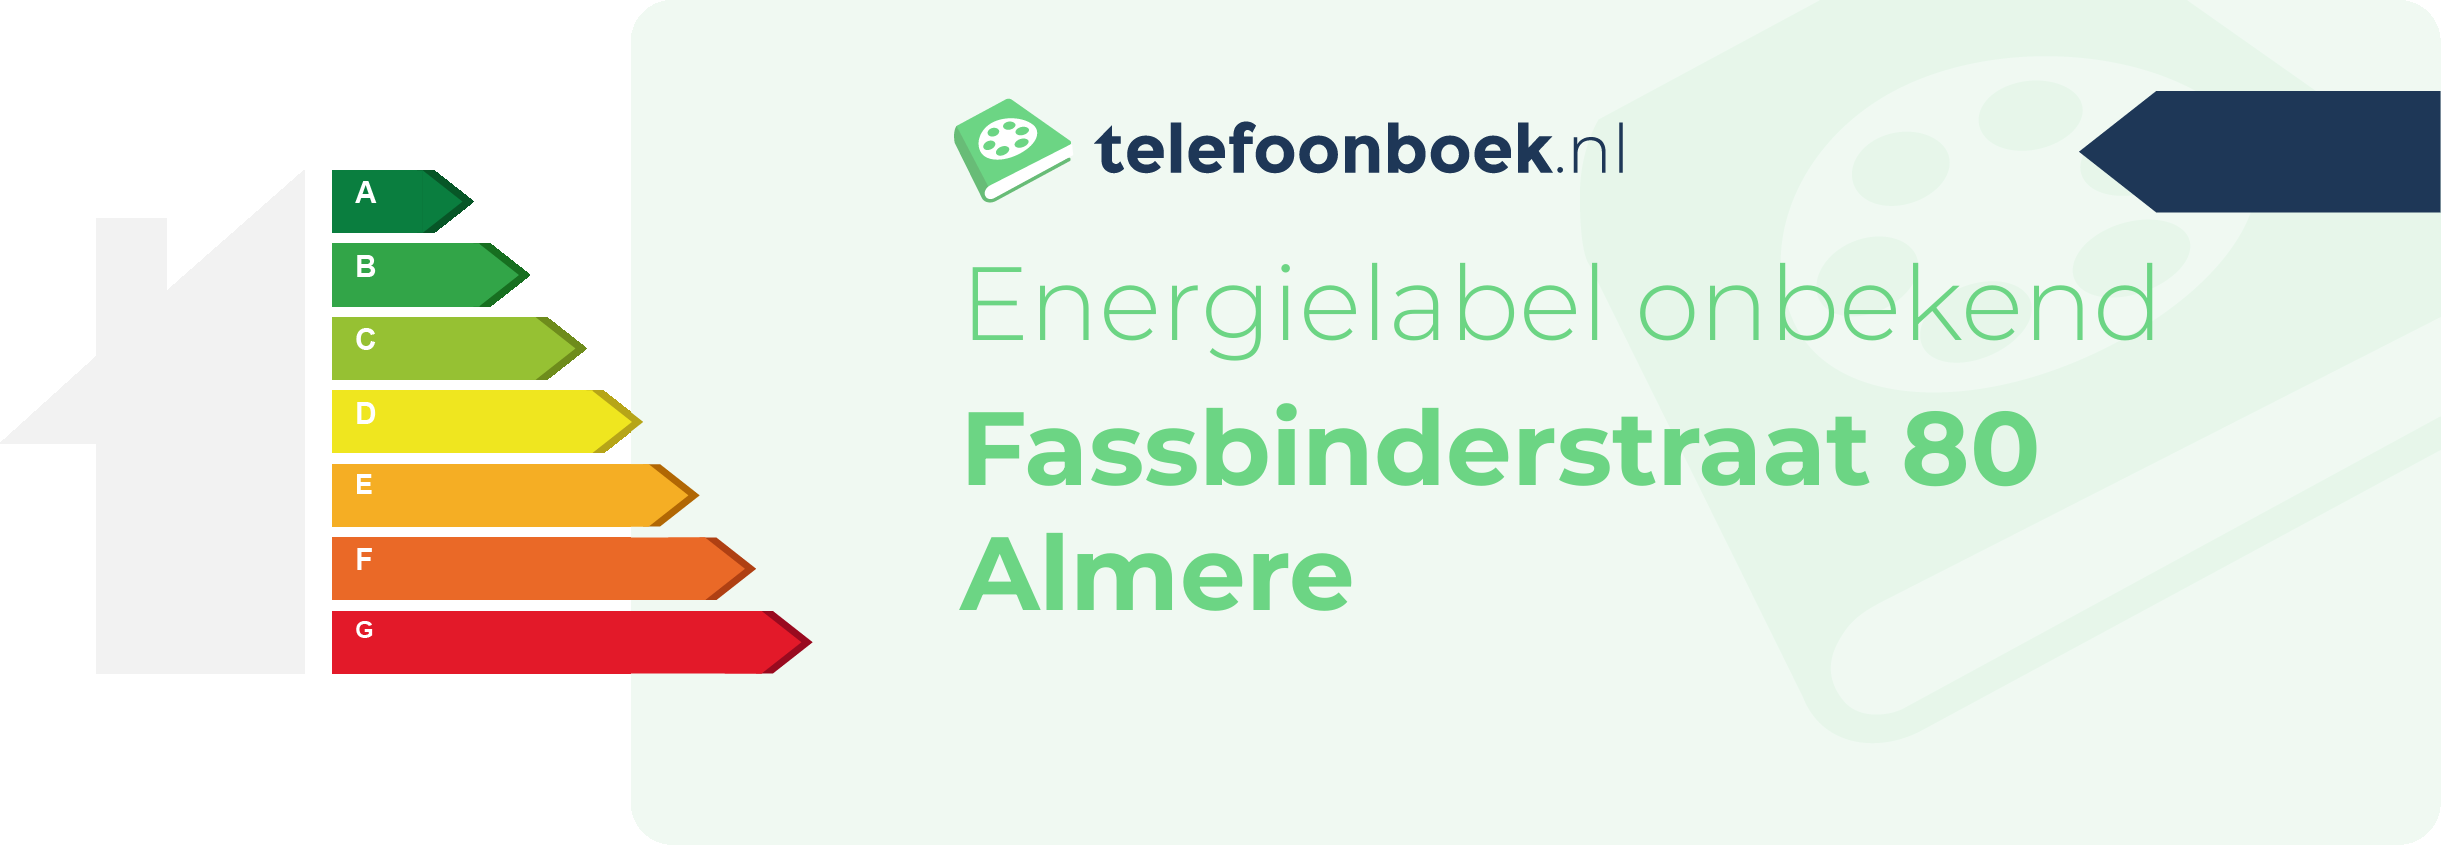 Energielabel Fassbinderstraat 80 Almere